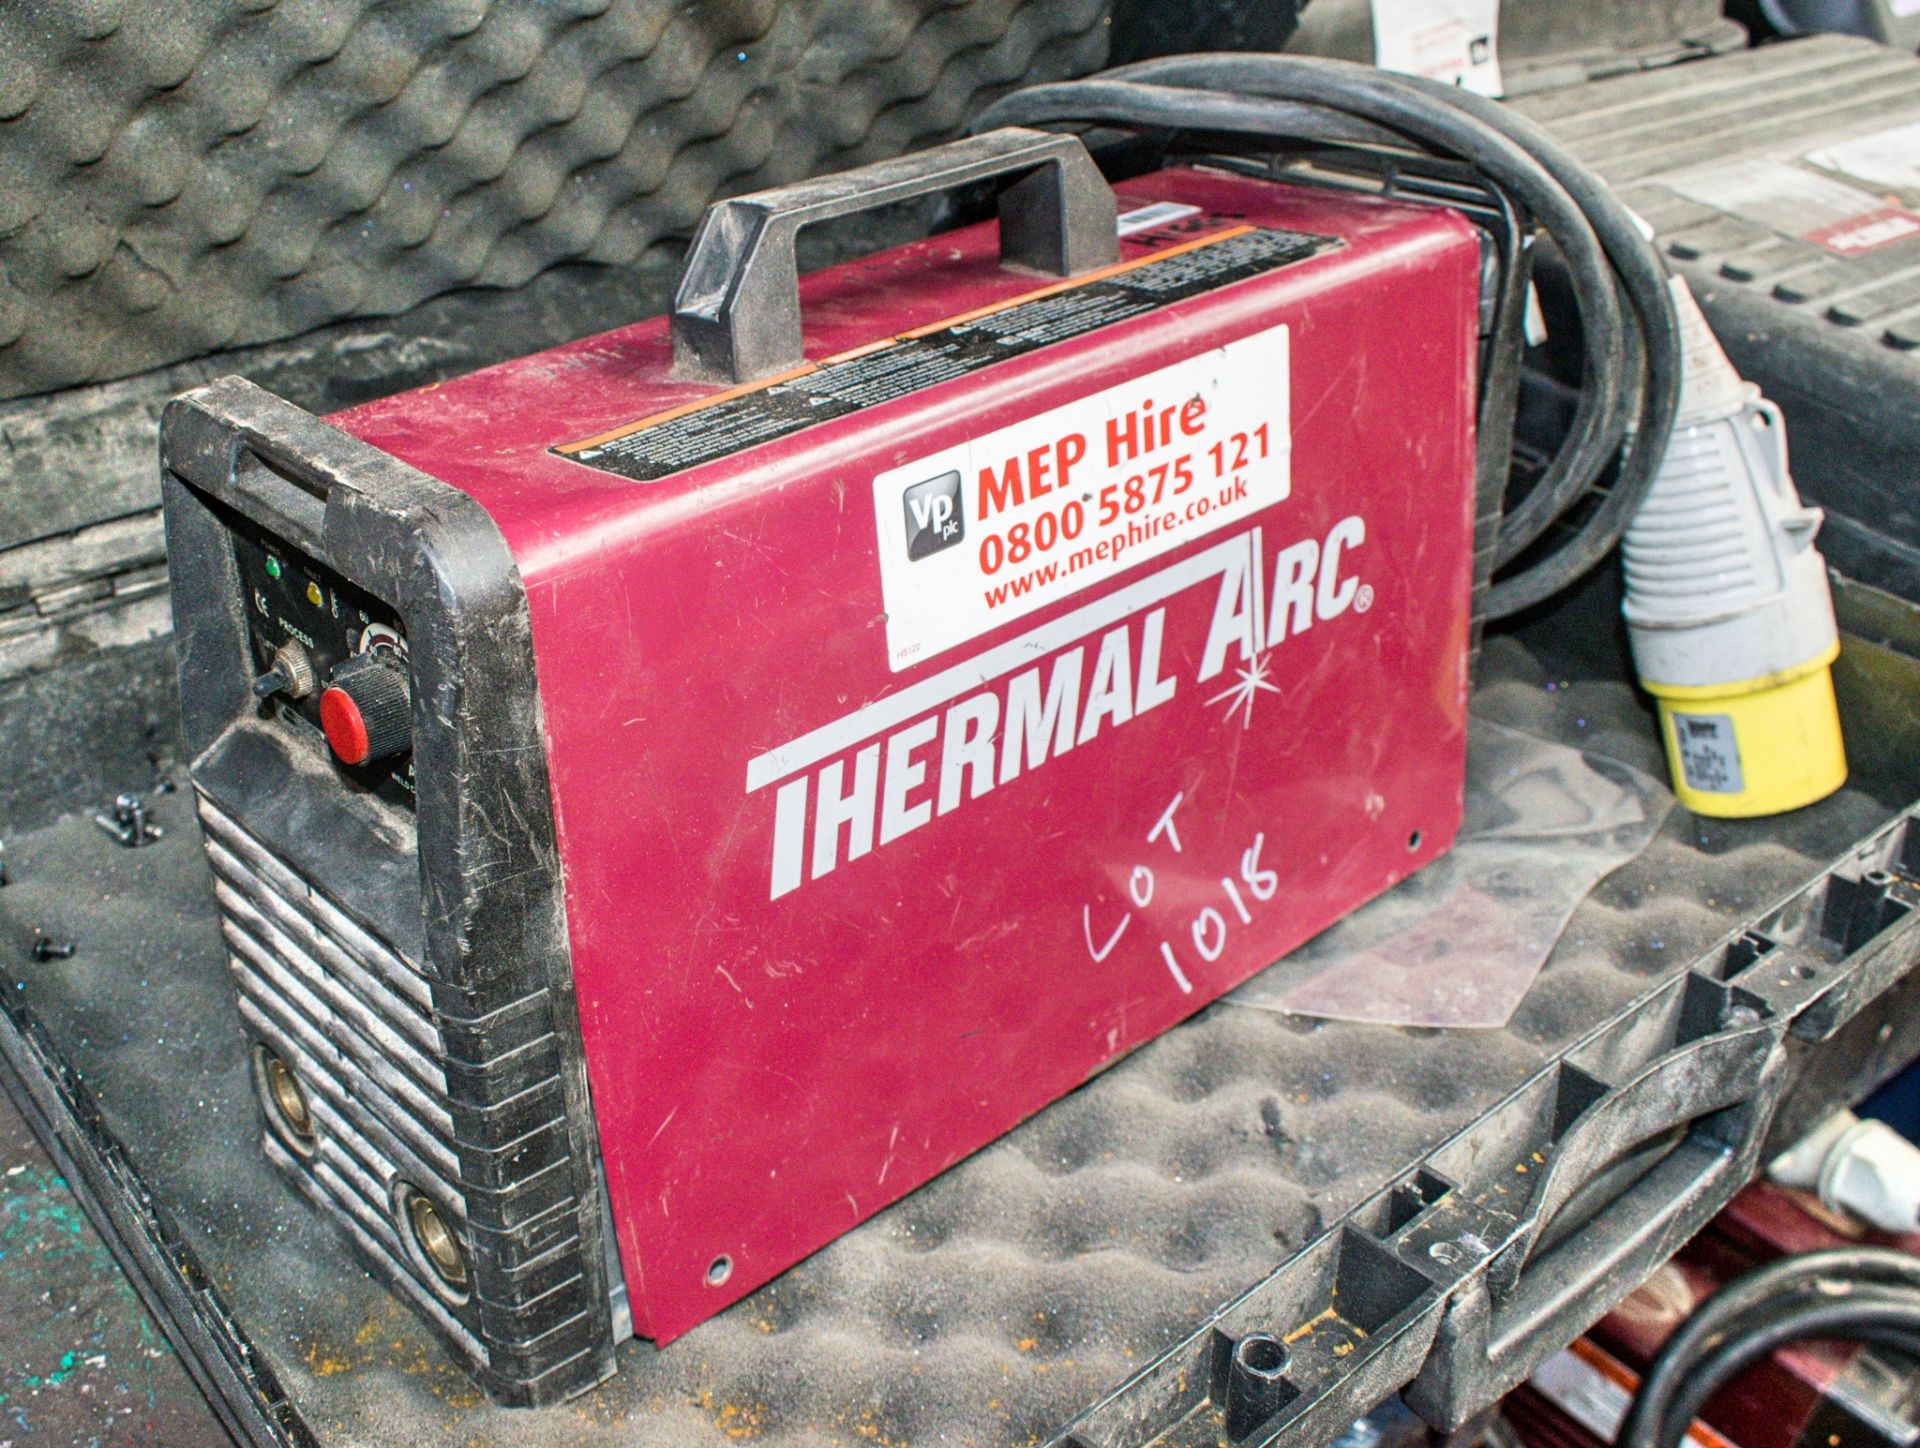 Thermal Arc 110v invertor welder c/w carry case